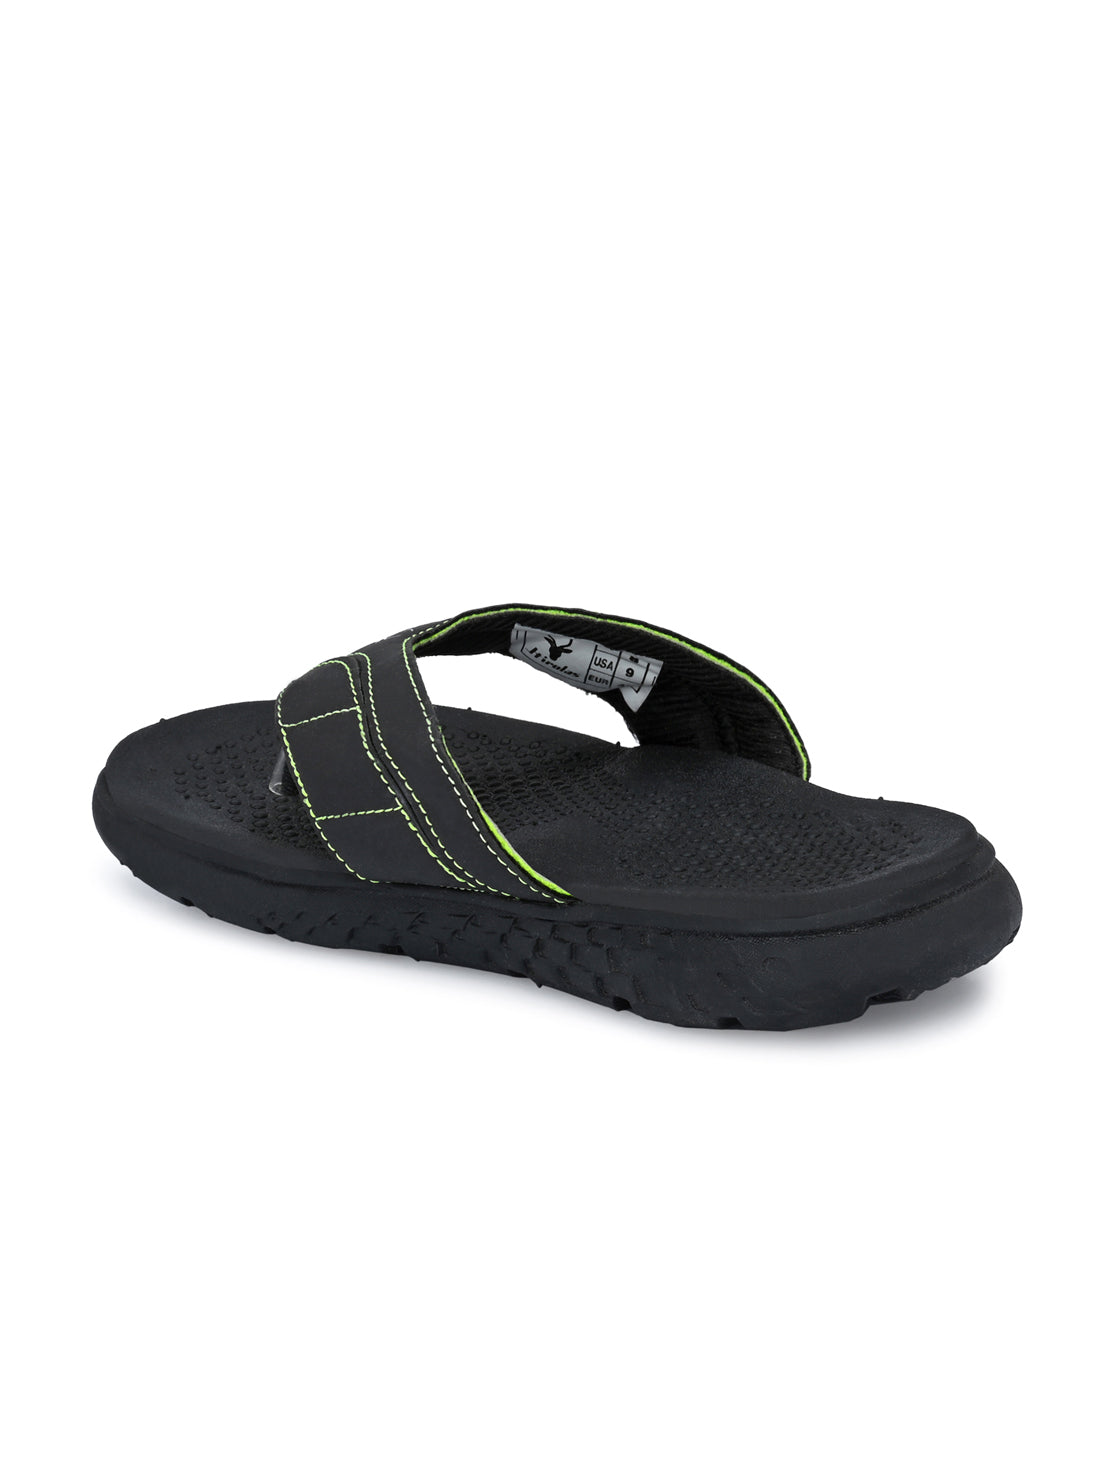 Hirolas® Men's Black/Green CLOUDWALK | Comfortable | Ultra-Soft | Light-Weight | Shock Absorbent | Bounce Back Technology | Water-Resistant Slippers (HROFF31BLG)